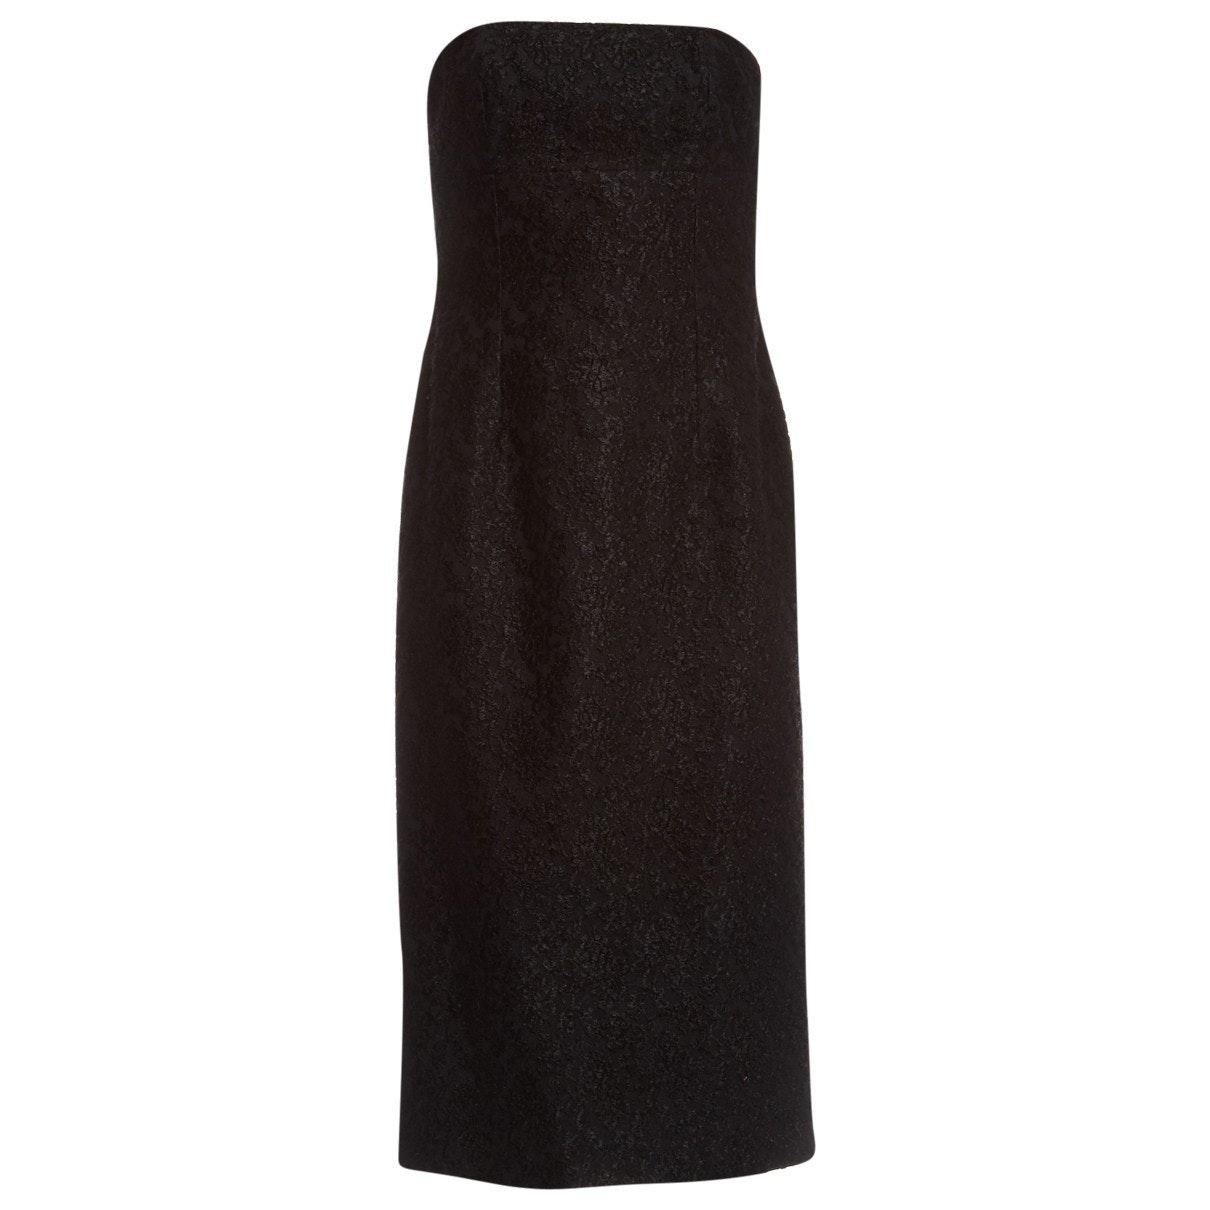 Celine Wool Maxi Dress in Black - Lyst